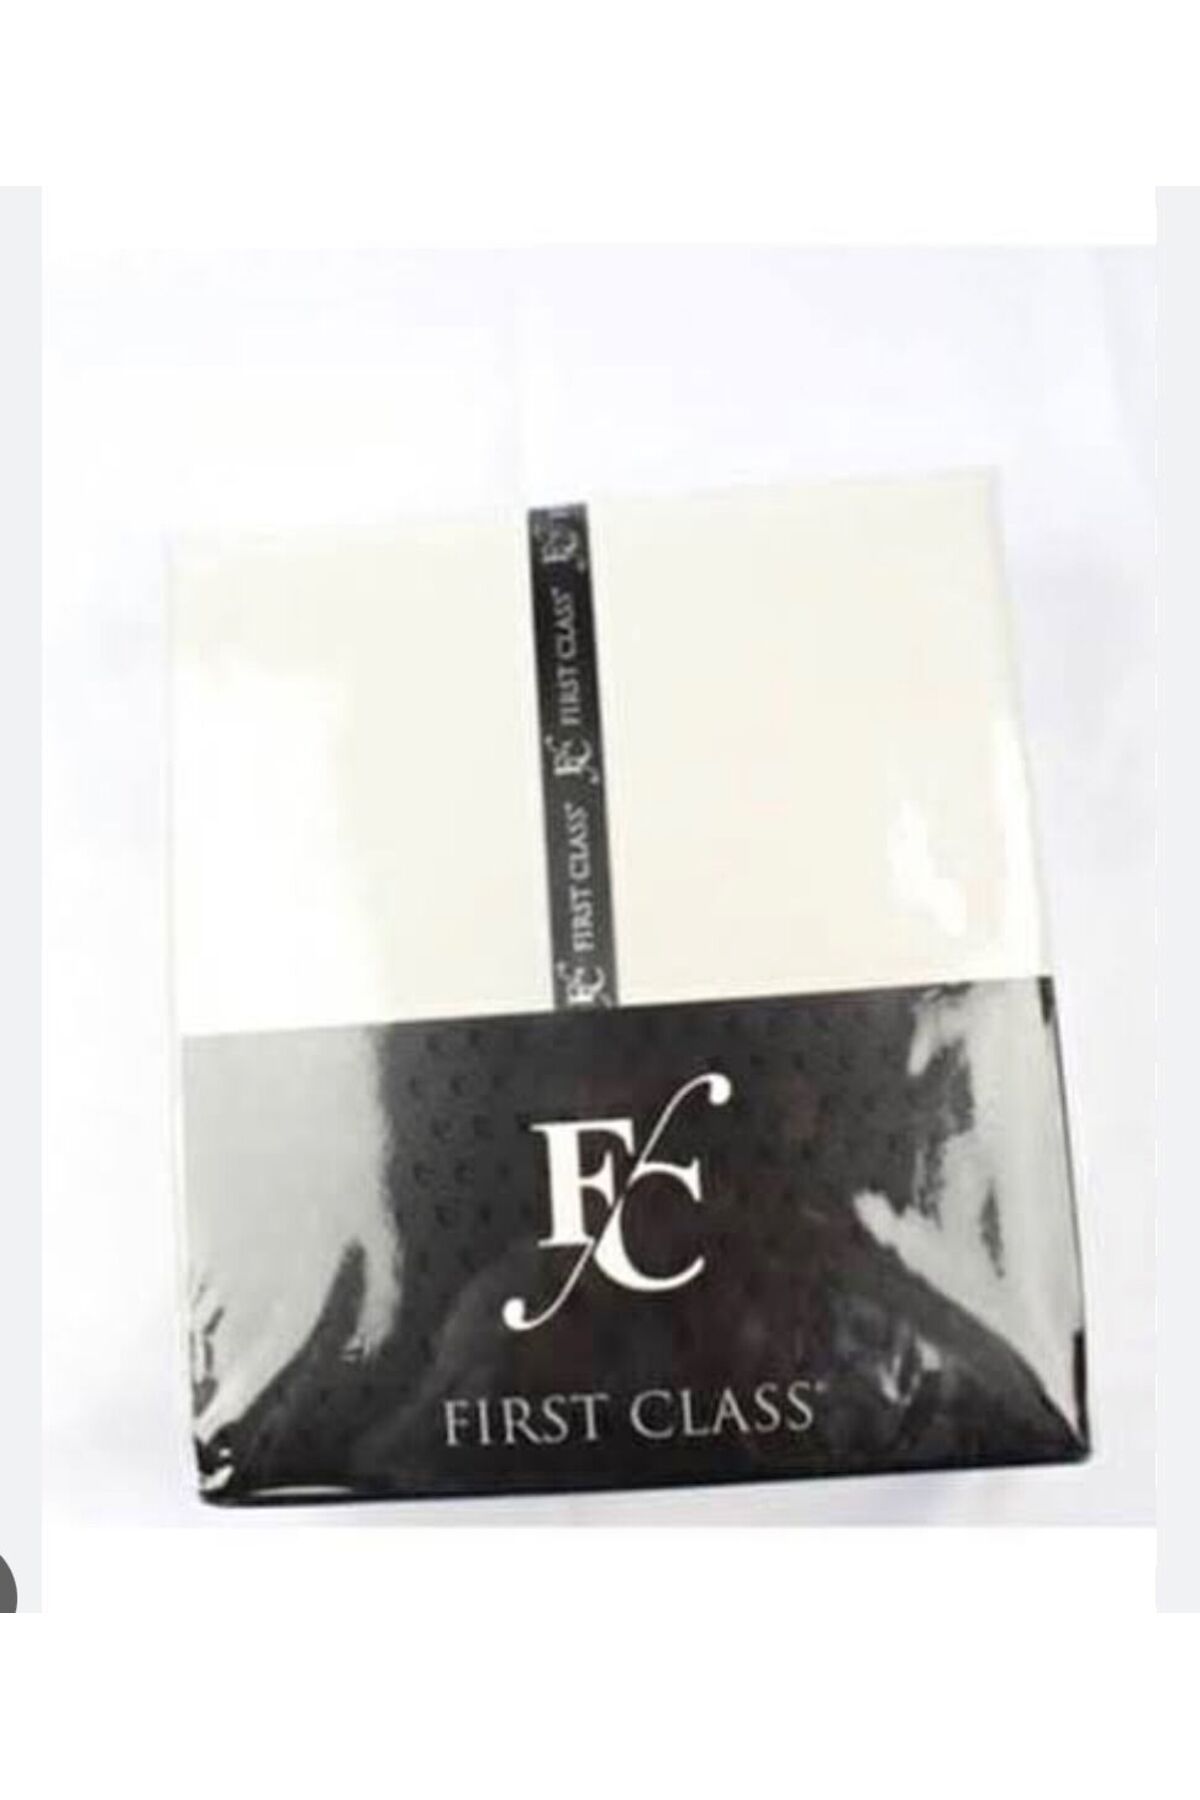 First Class alez first class